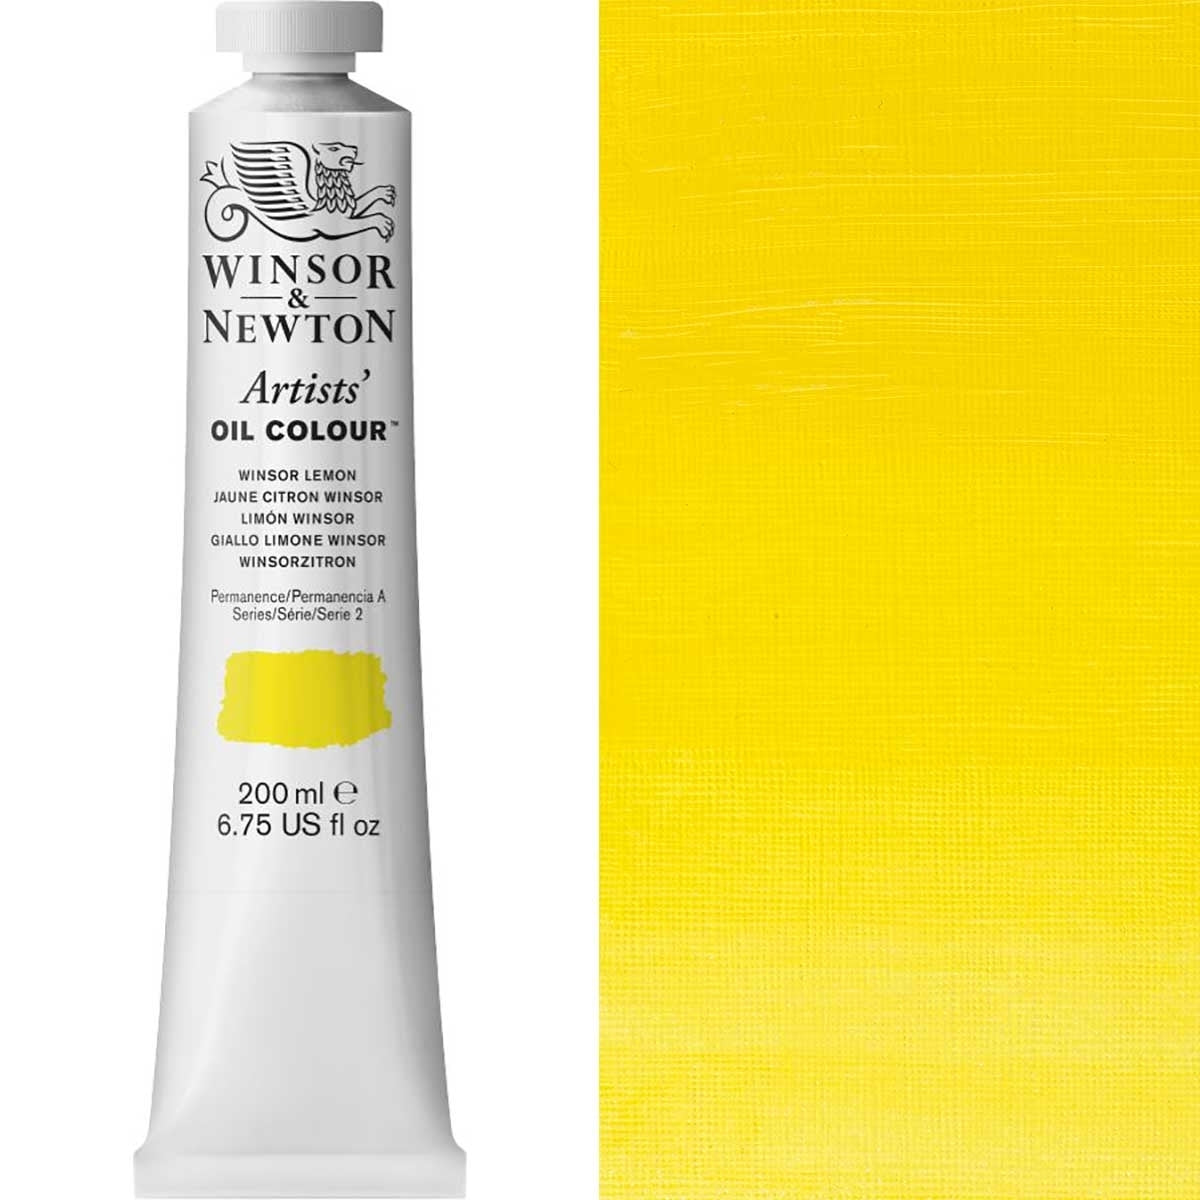 Winsor et Newton - Couleur d'huile des artistes - 200 ml - Lemon Winsor